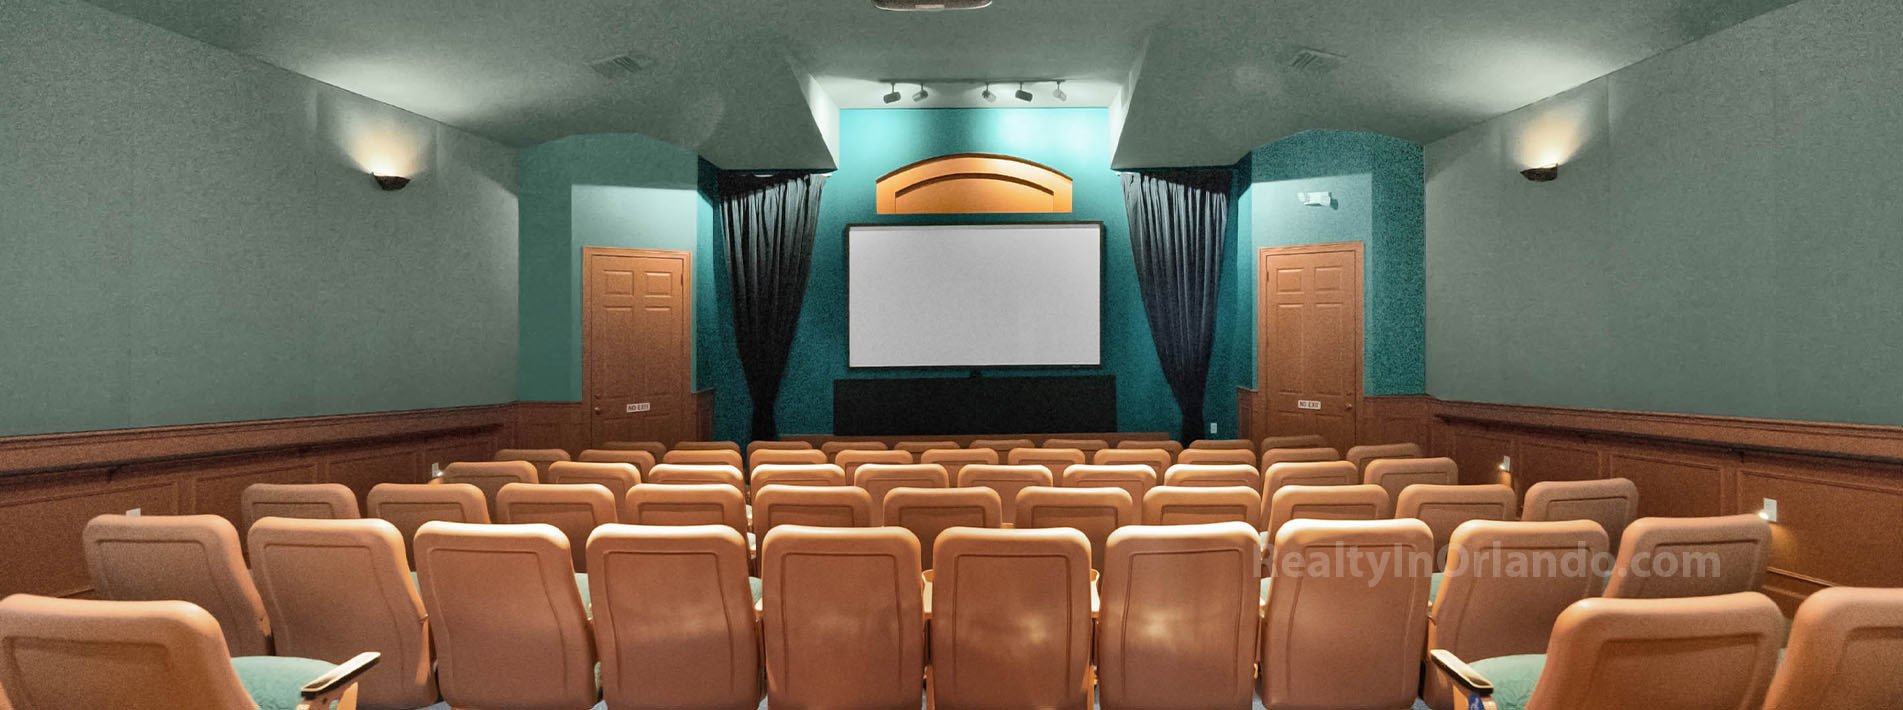 Wyndham Lakes Estates Cinema